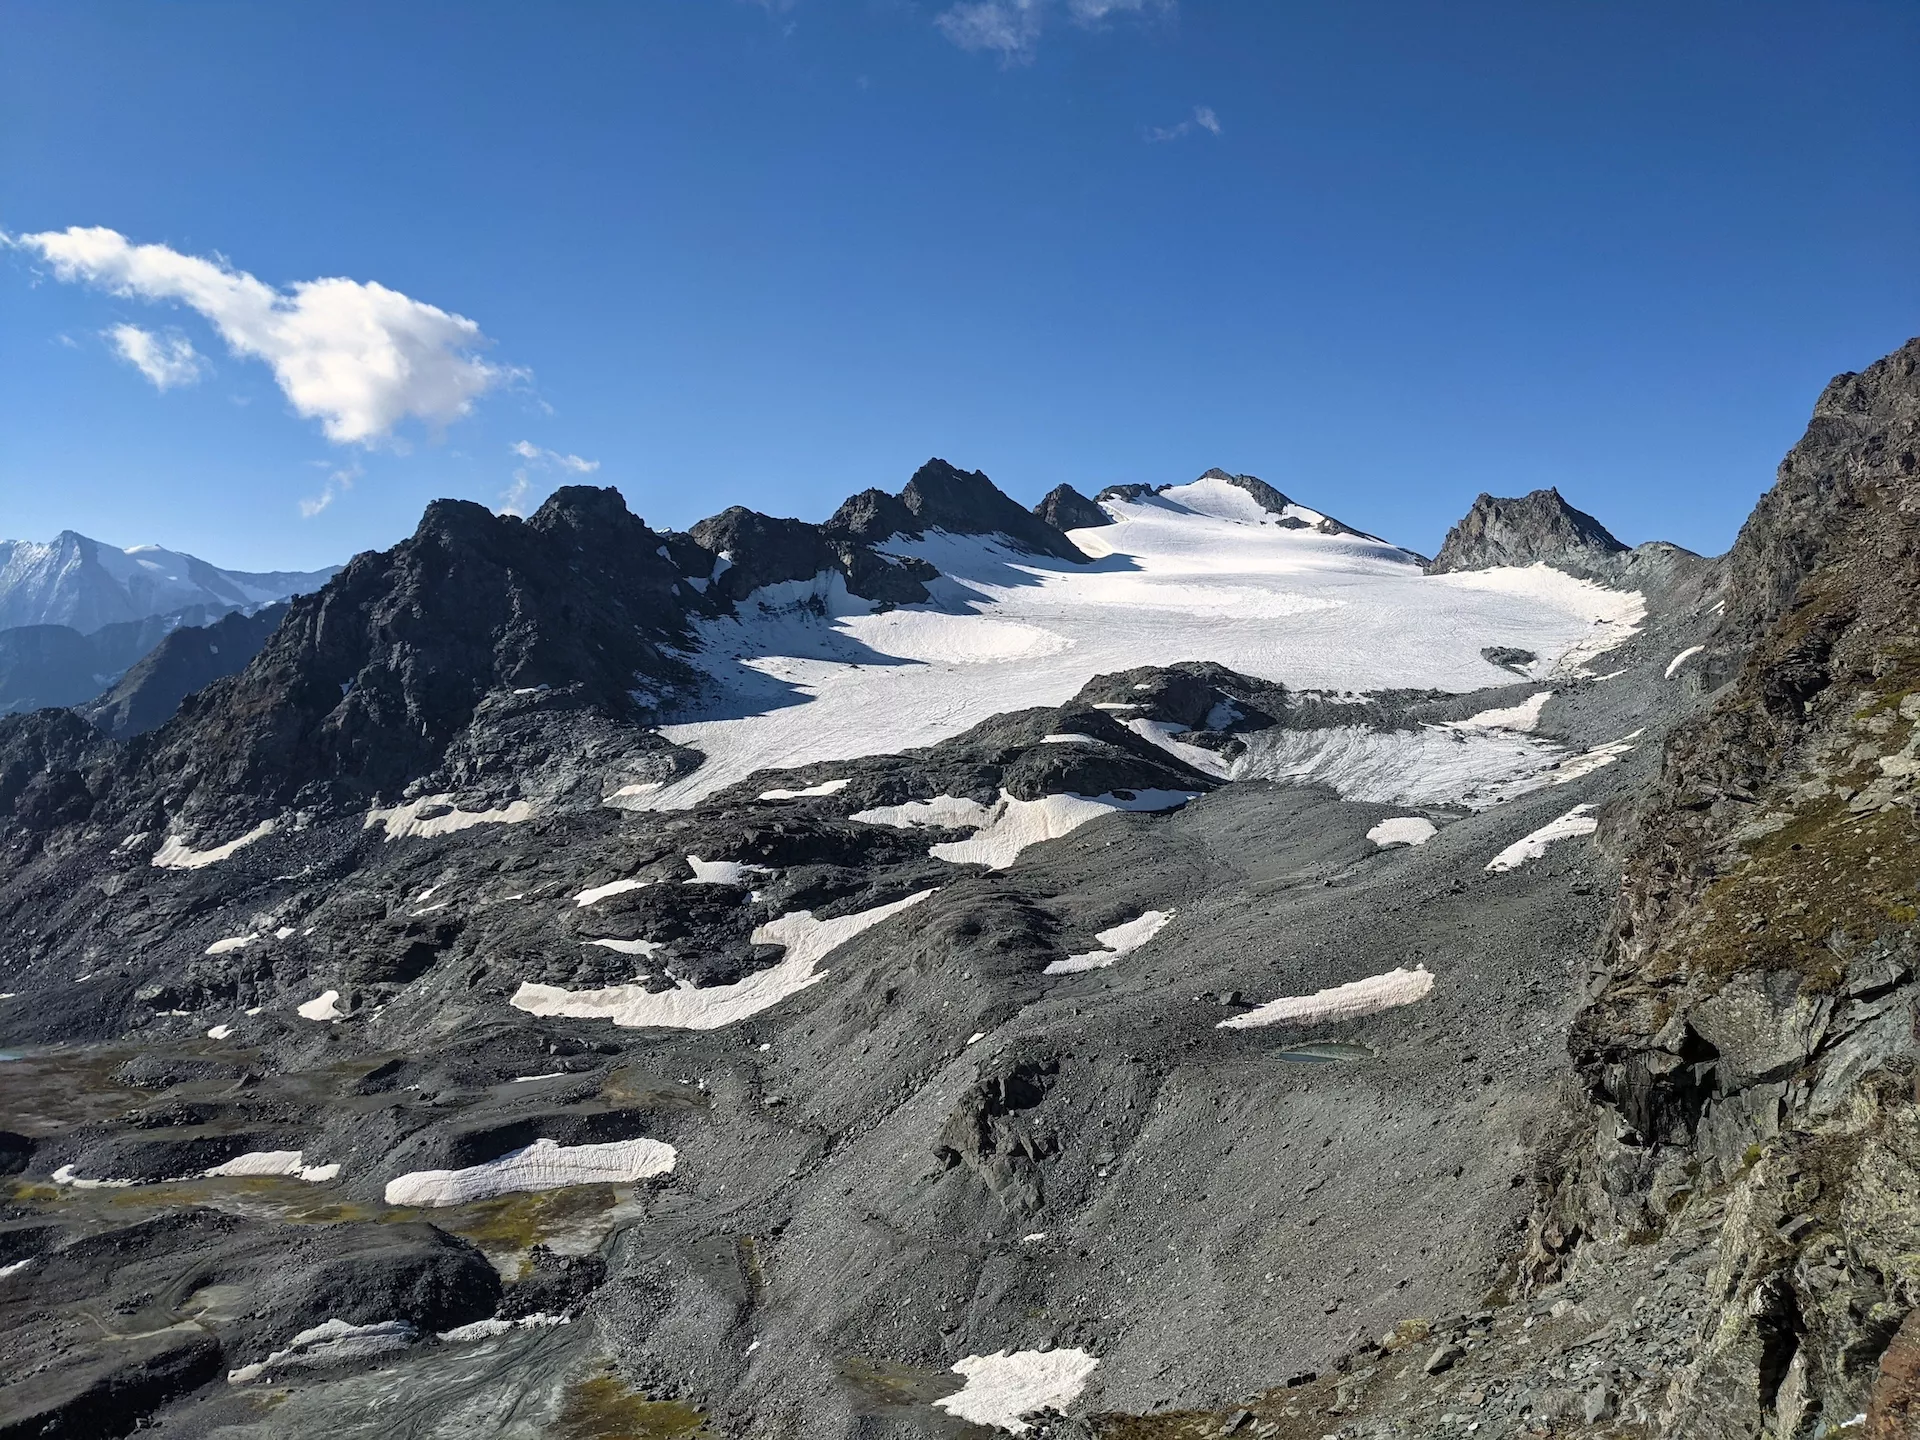 View of the Rosablanche glacier from Col de Prafleuri